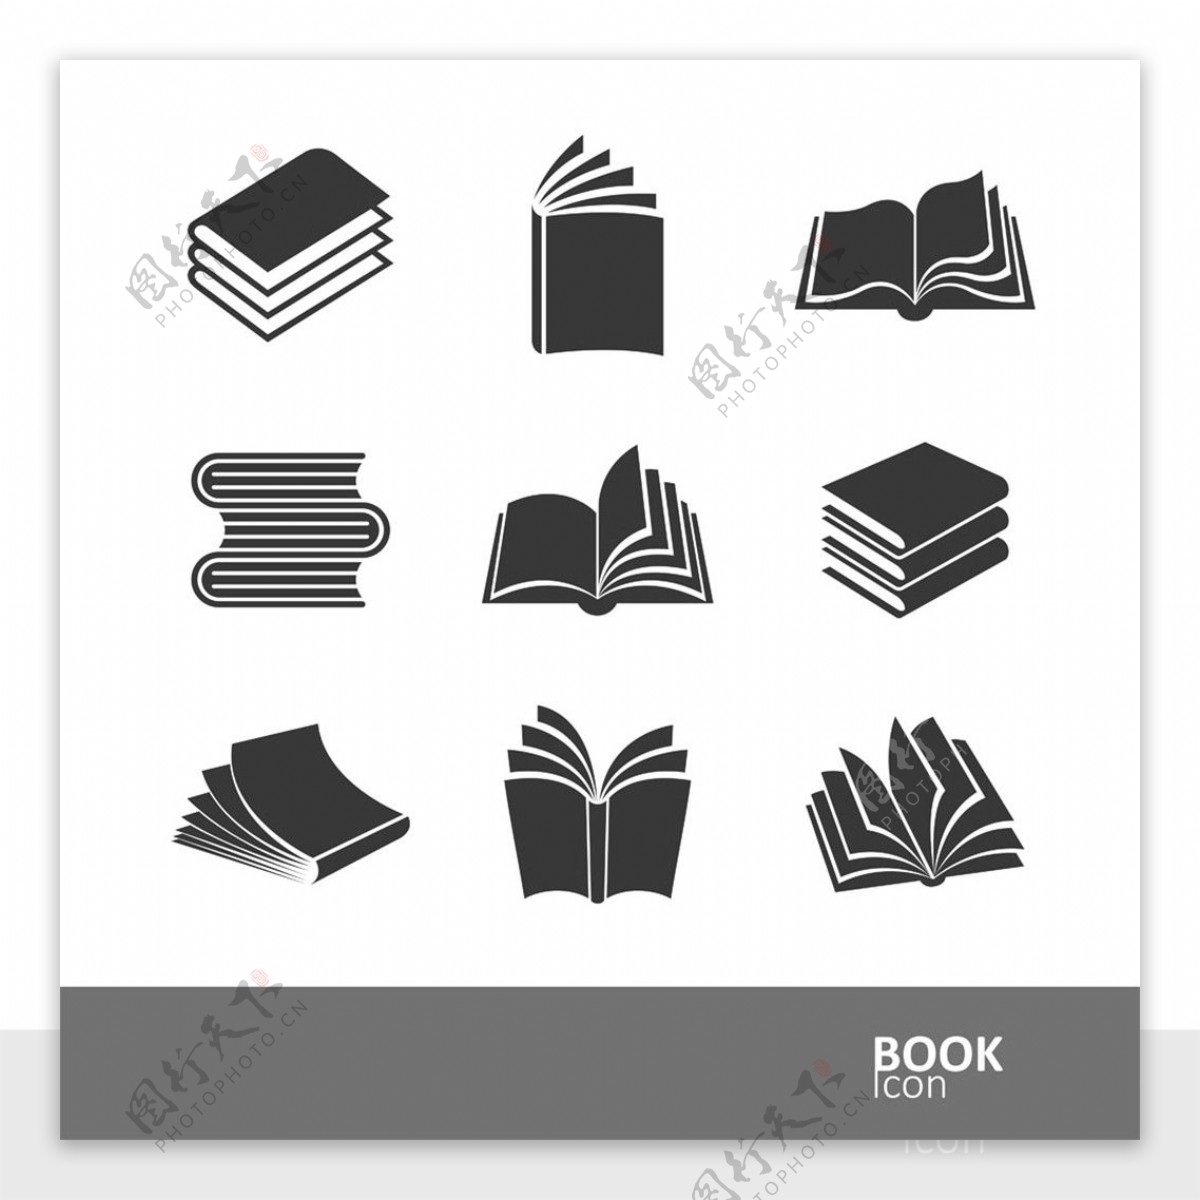 各种书本样式设计图片